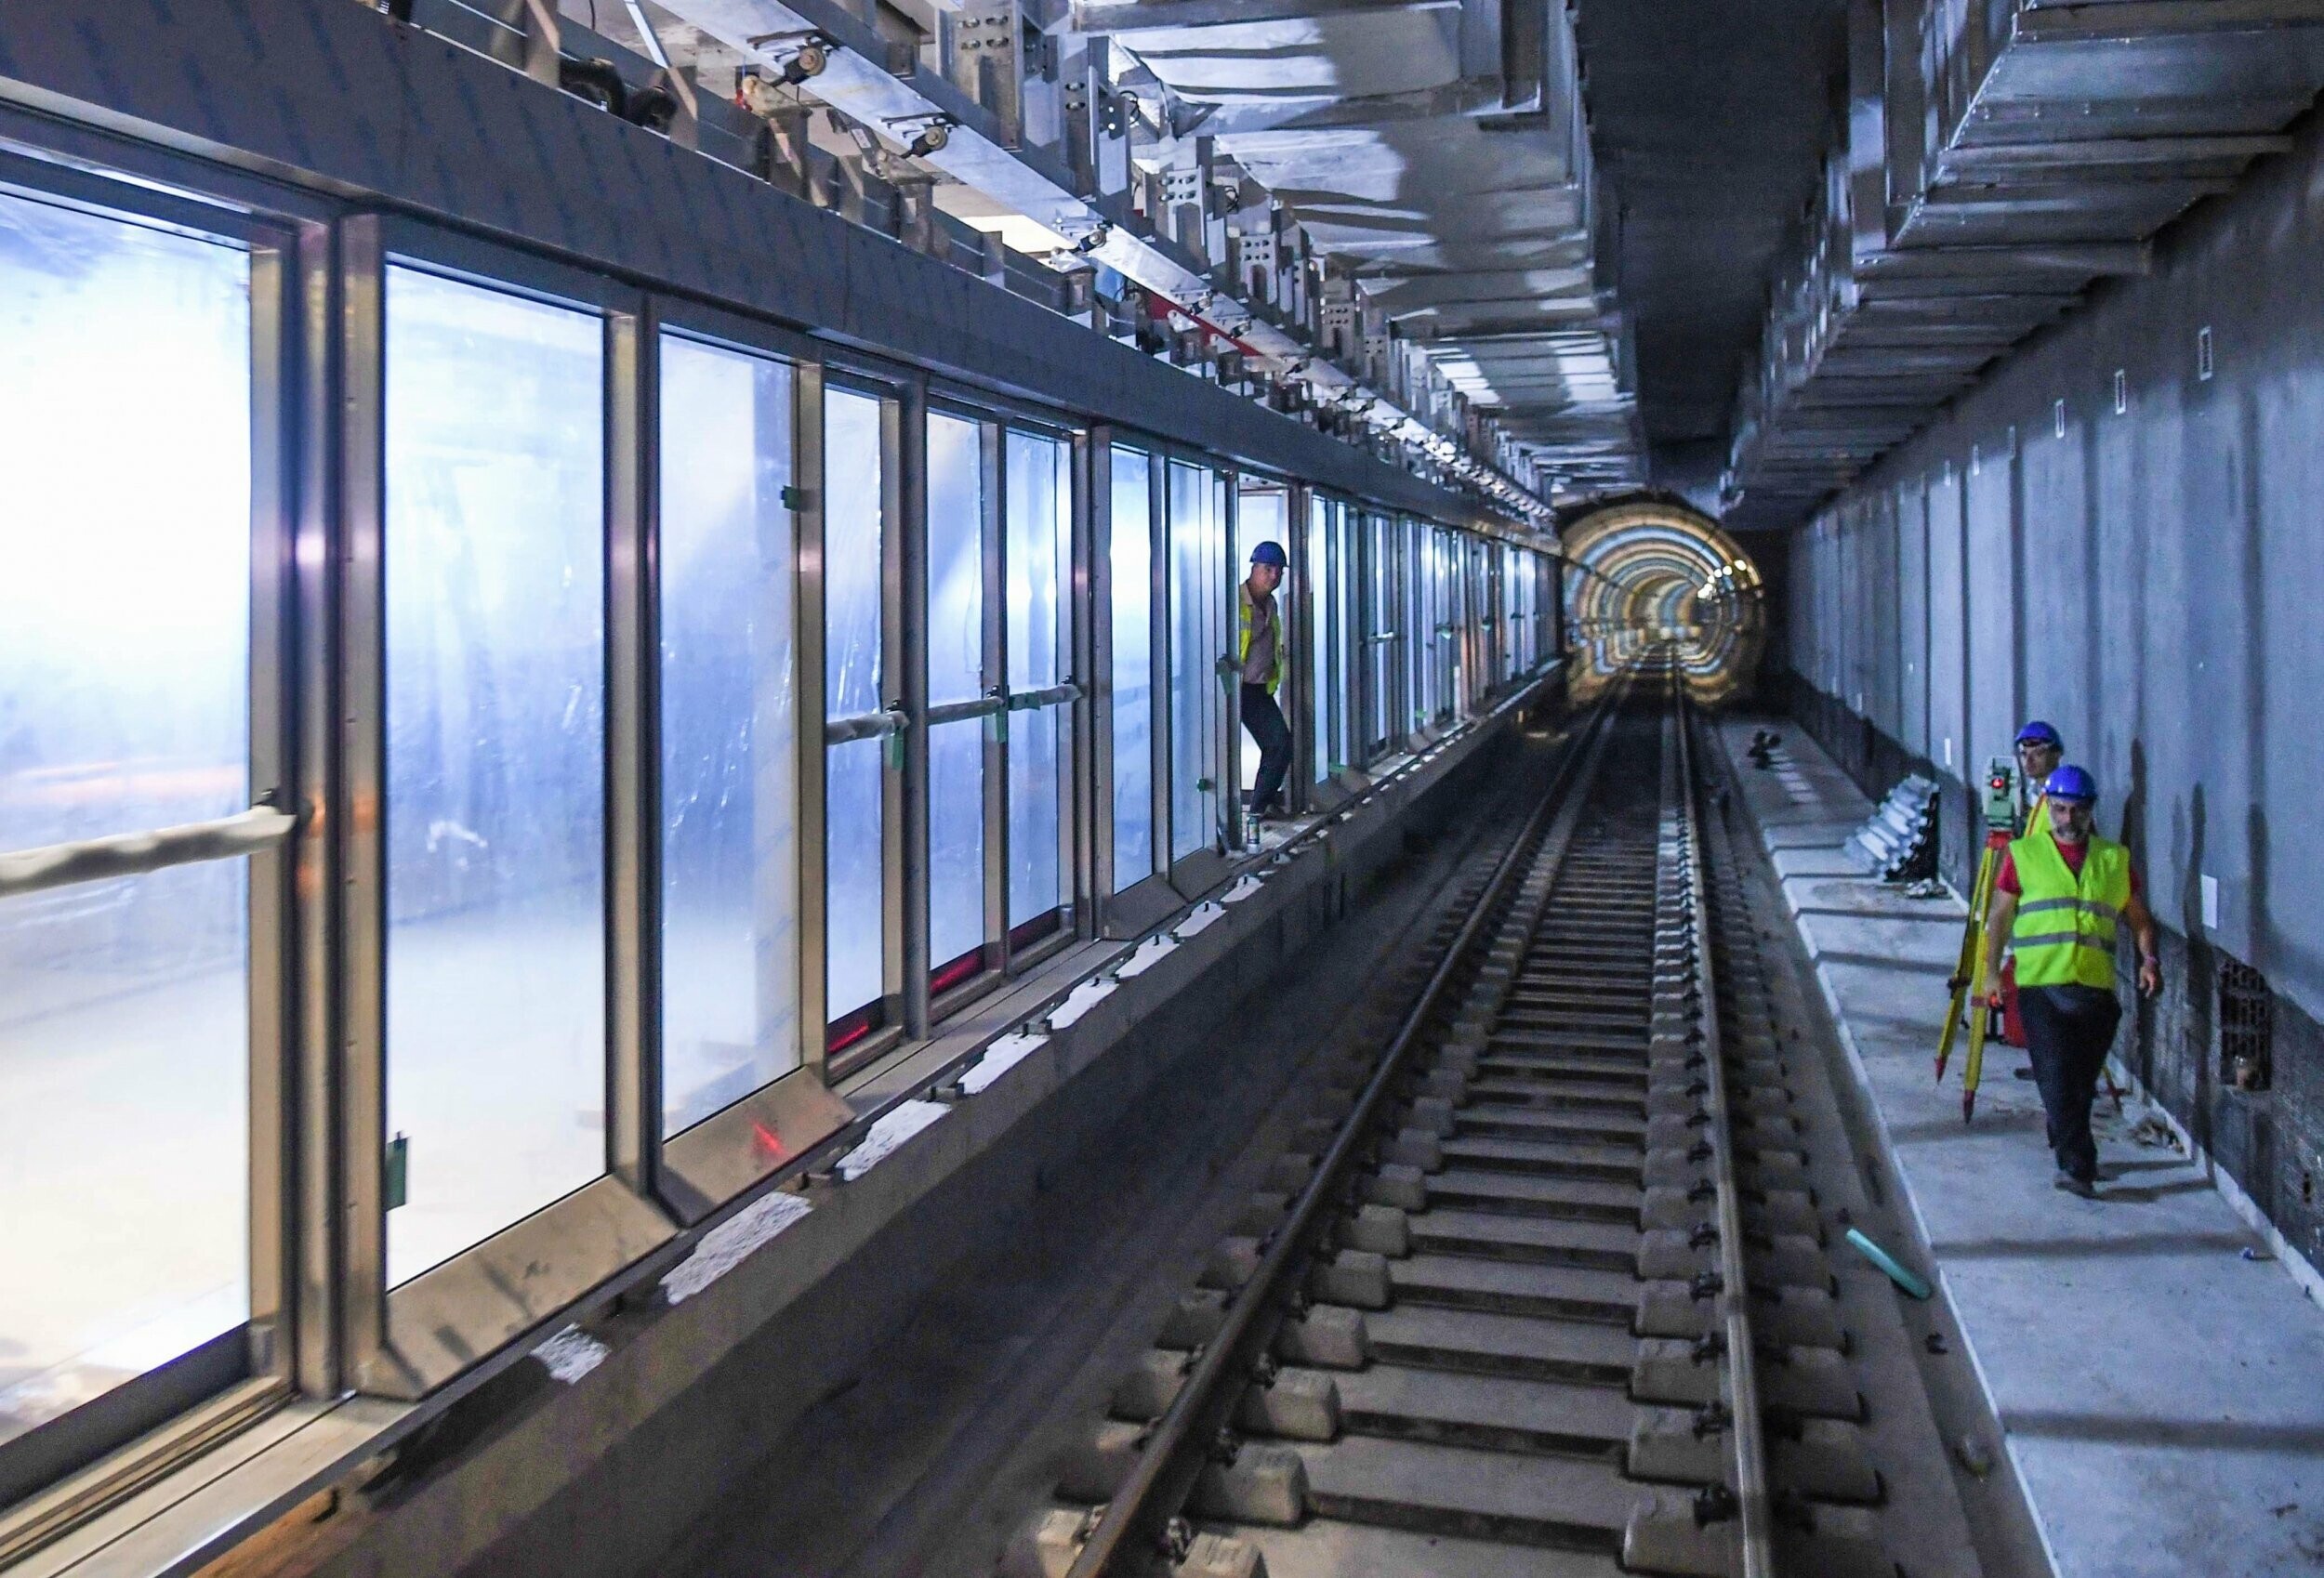 More information about "Θεσσαλονίκη: Το σχέδιο για remake 7 ζωνών πέριξ των σταθμών του Μετρό"